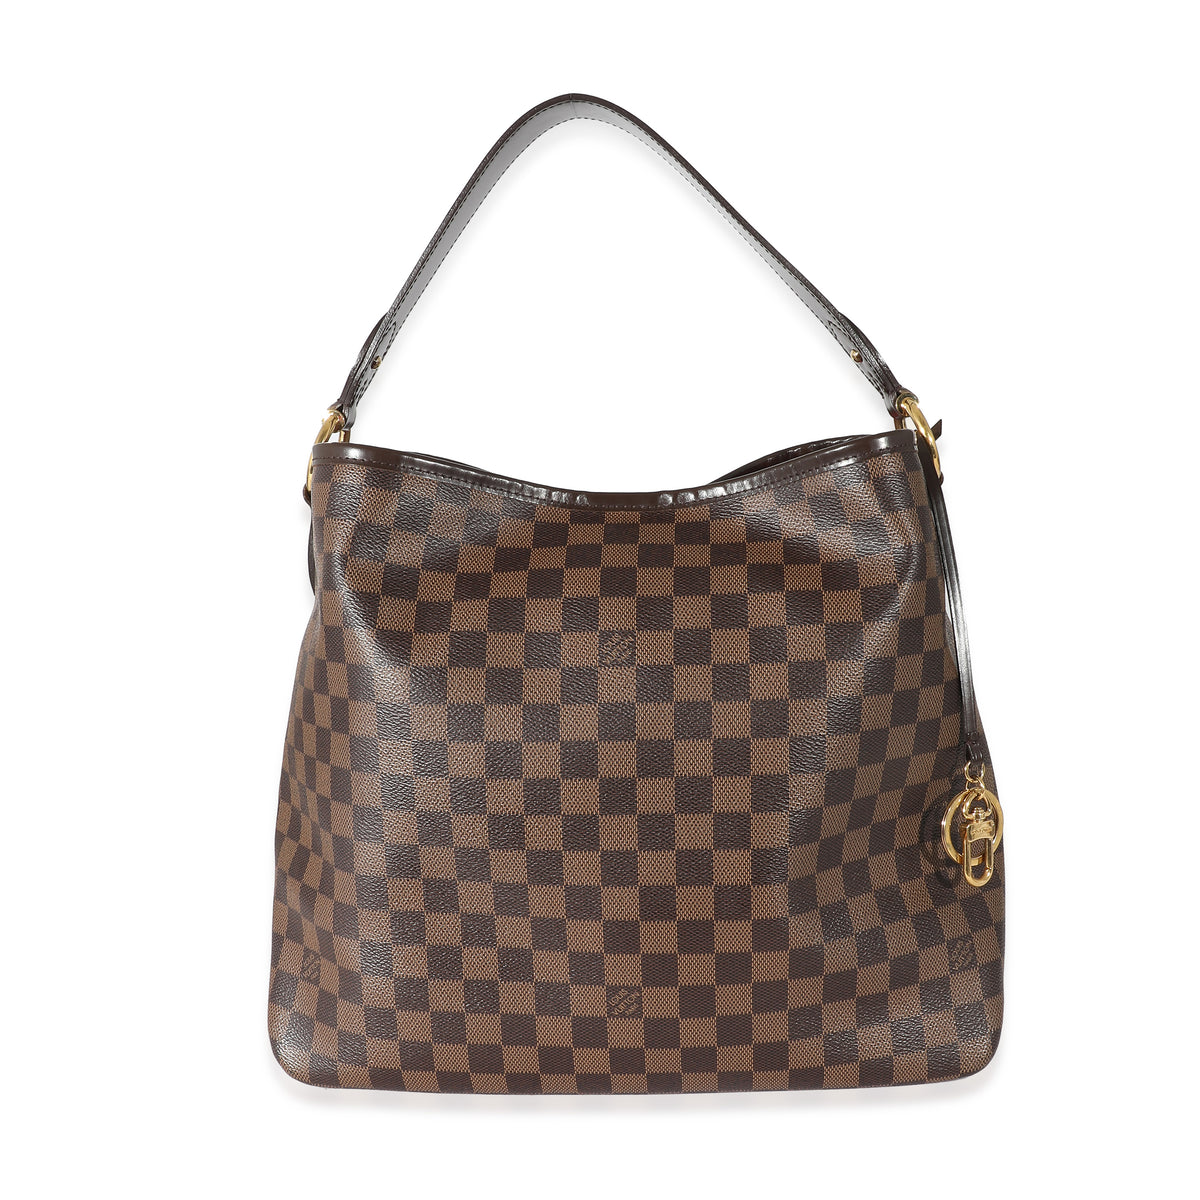 Louis Vuitton, Bags, Louis Vuitton Delightful Mm Damier Ebene